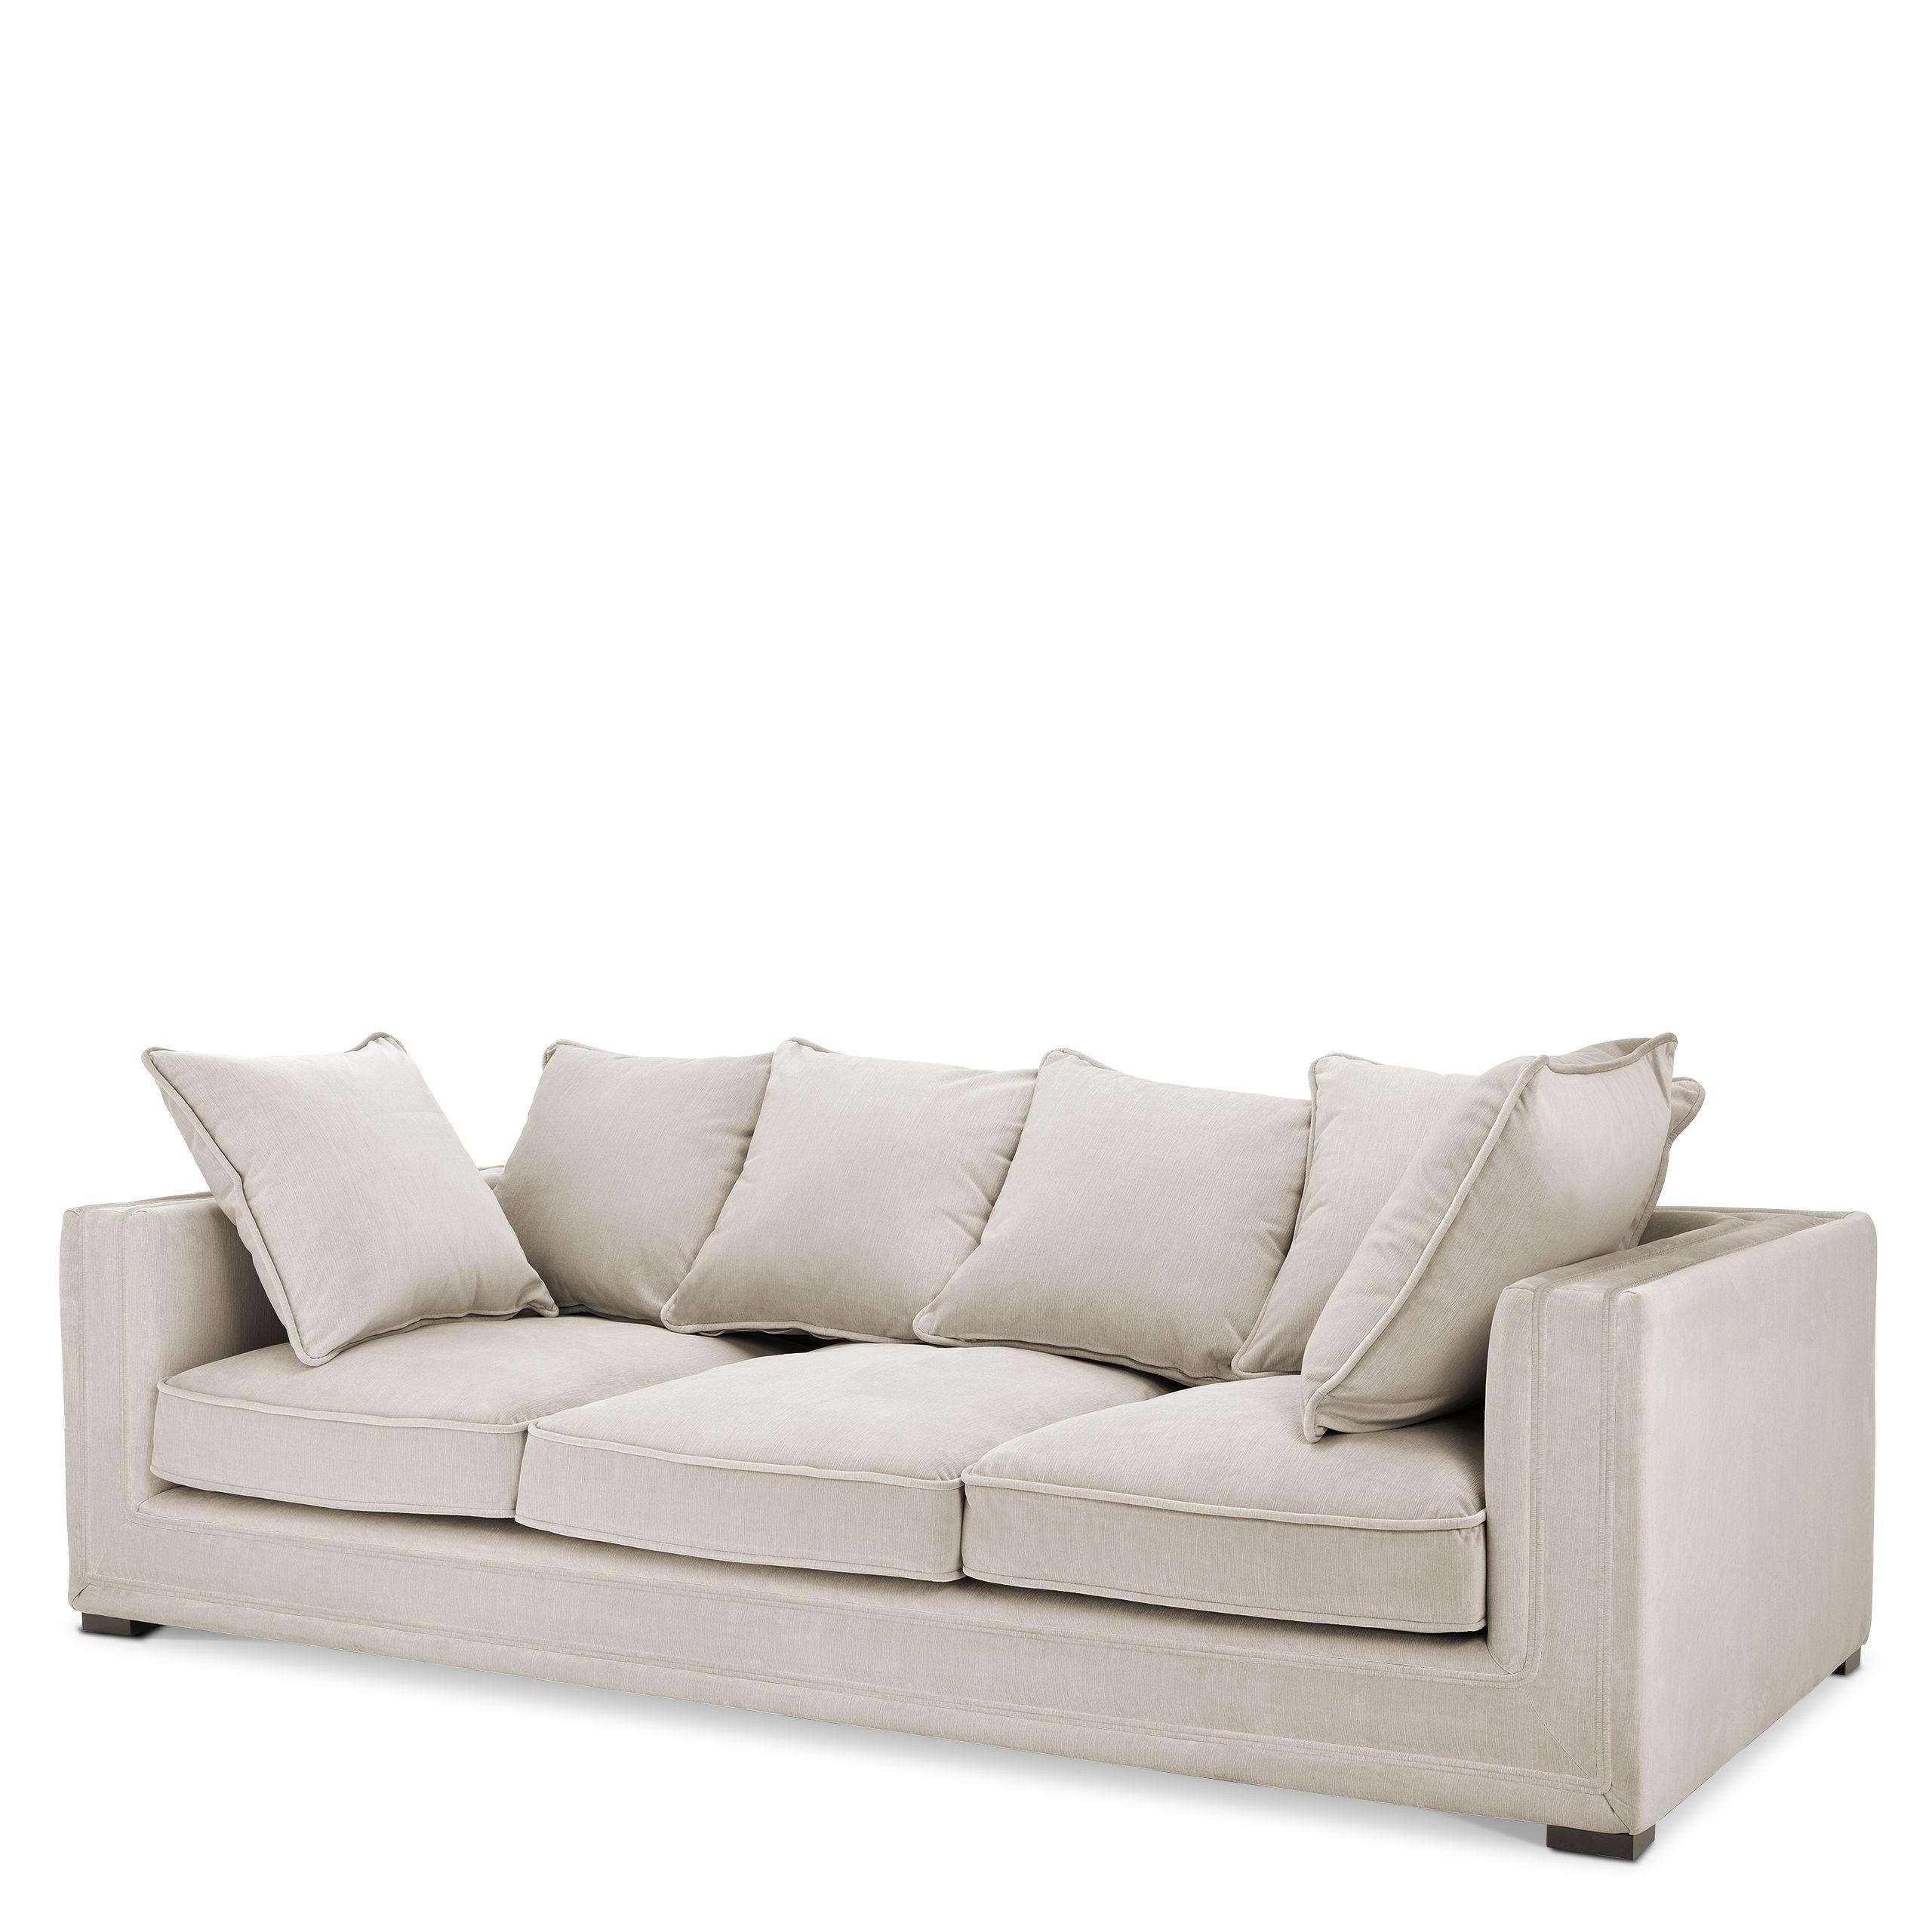 Купить Прямой диван Sofa Menorca в интернет-магазине roooms.ru